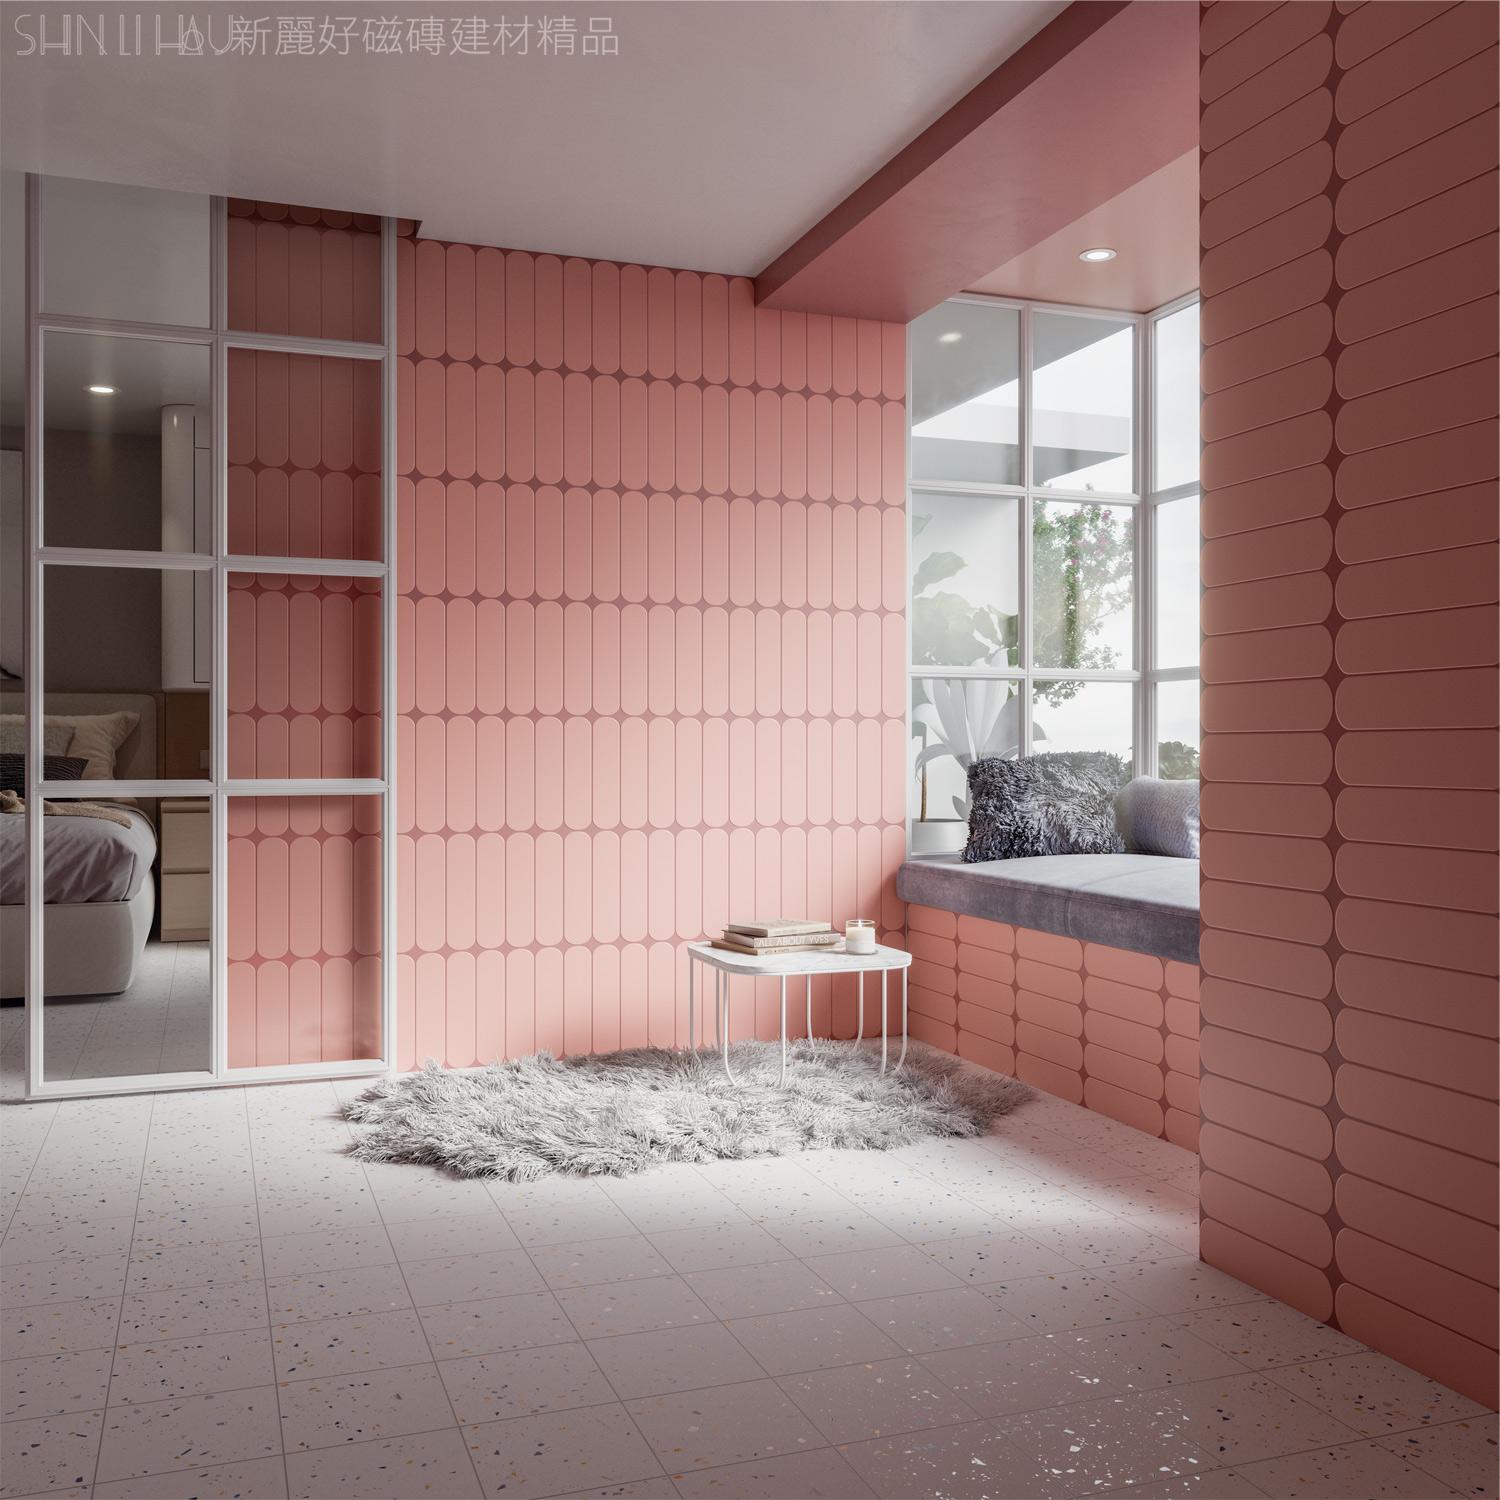 地鐵磚-閣蕾雅壁磚-粉紅詳樣式圖